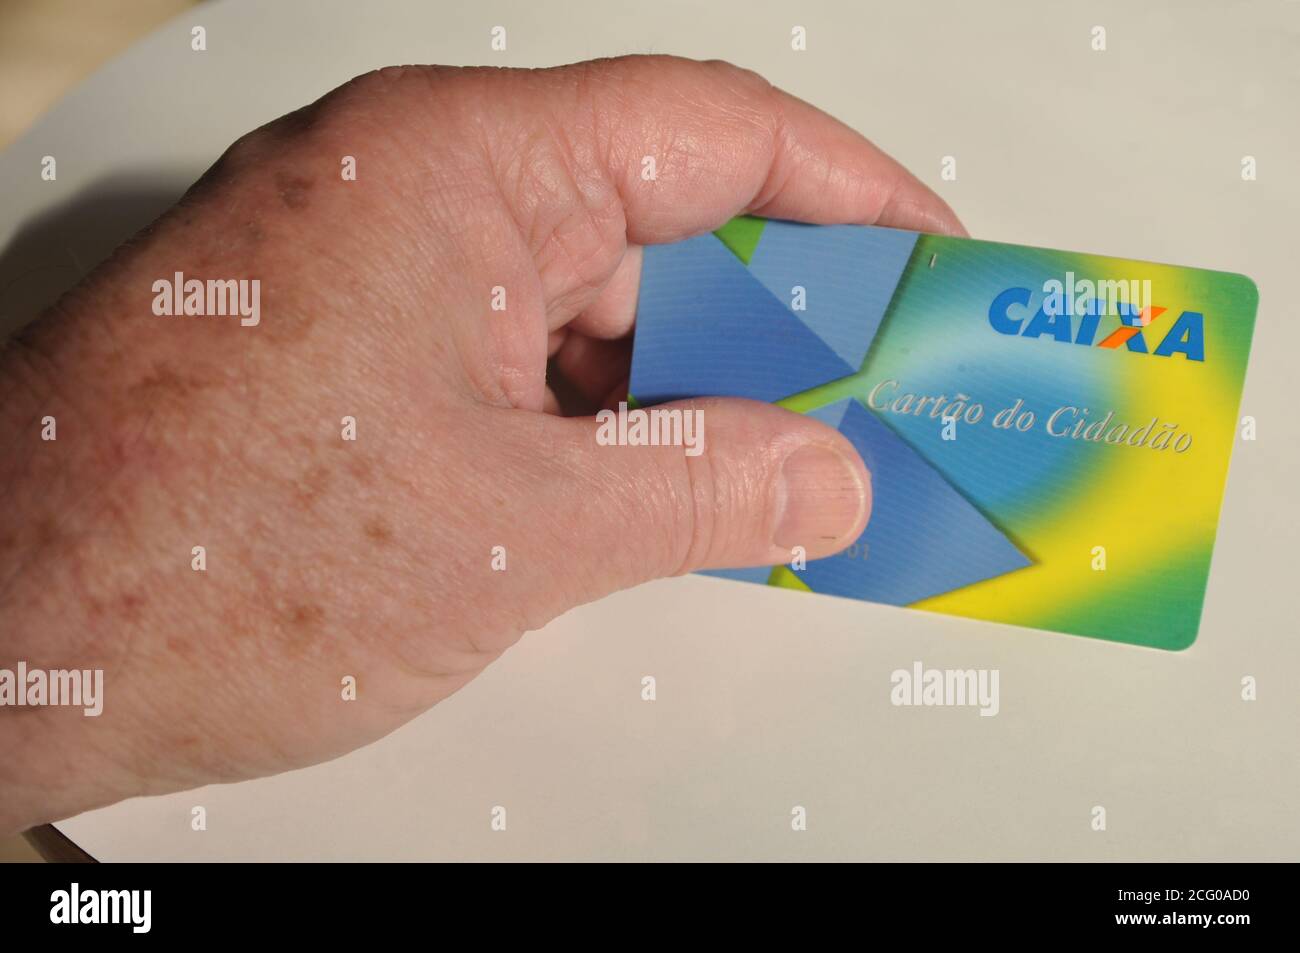 Anziani, che ricevono una carta di credito con il nome di Cartão do Cidadão, una carta valida in Brasile e consegnata ad una banca del governo federale, Brasile, Foto Stock